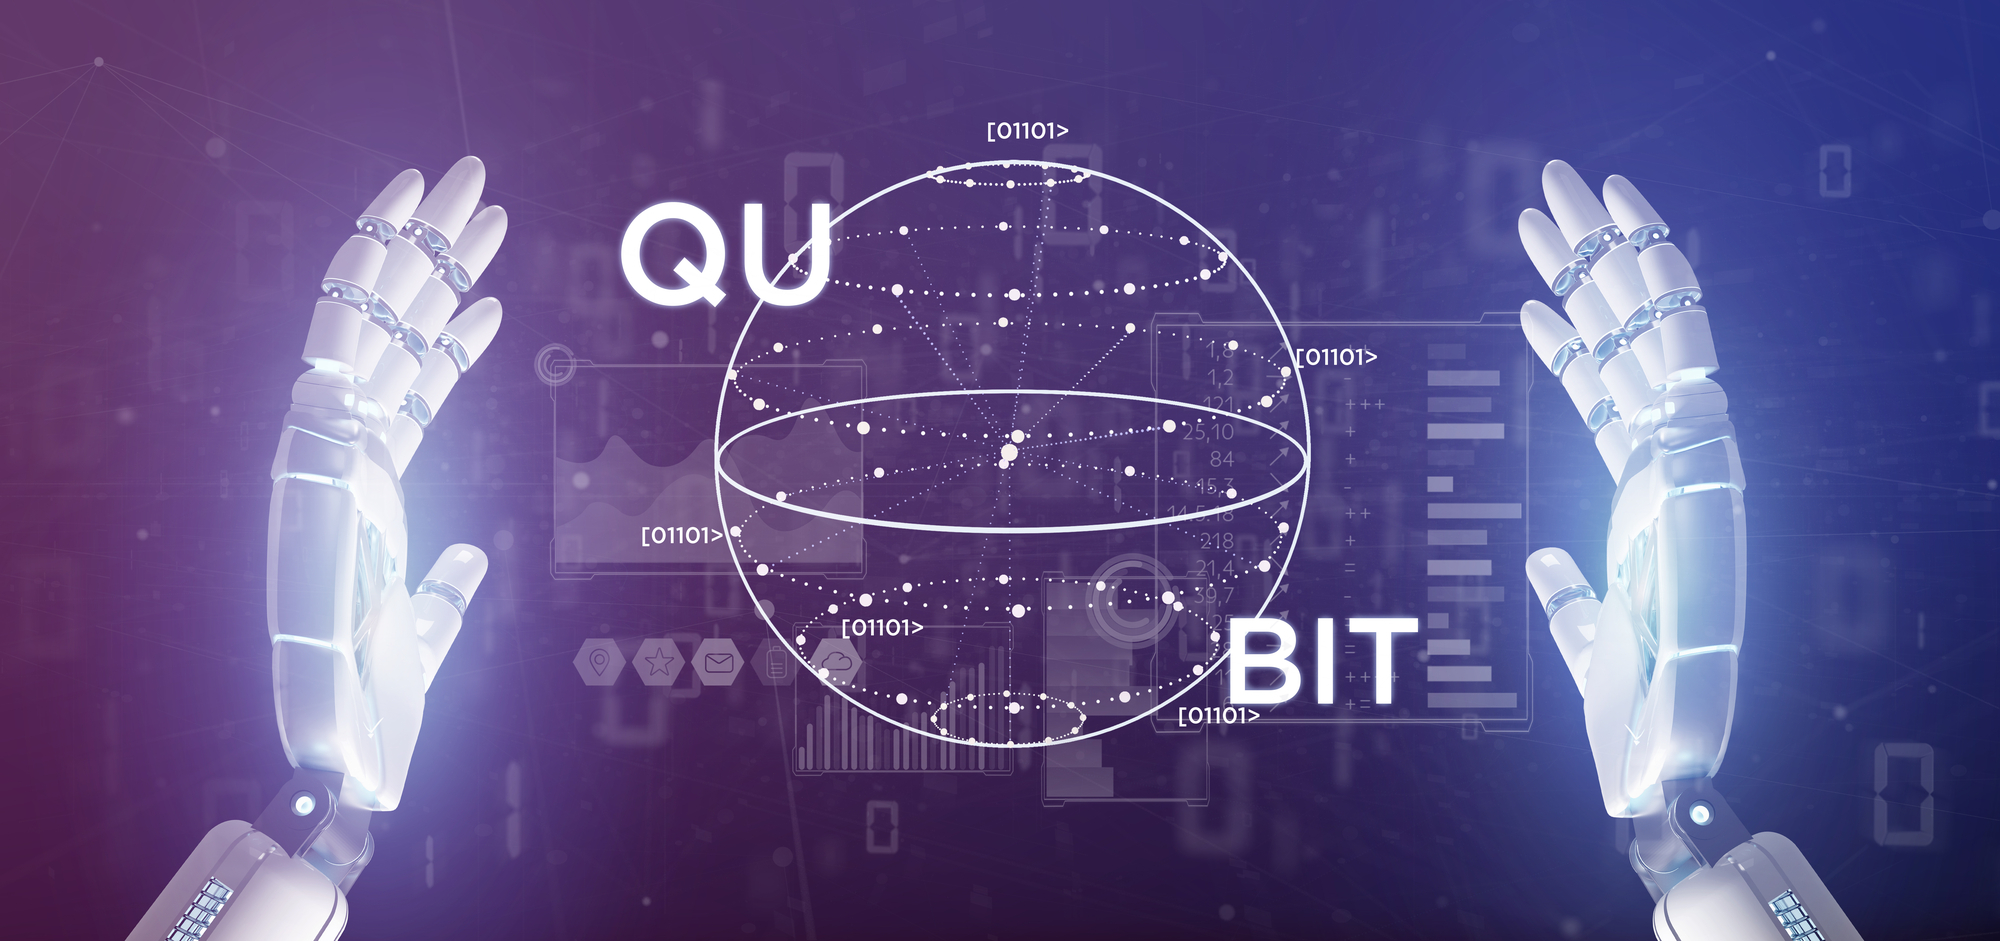 Qubit, una tecnologia rivoluzionaria che ci porta nel futuro